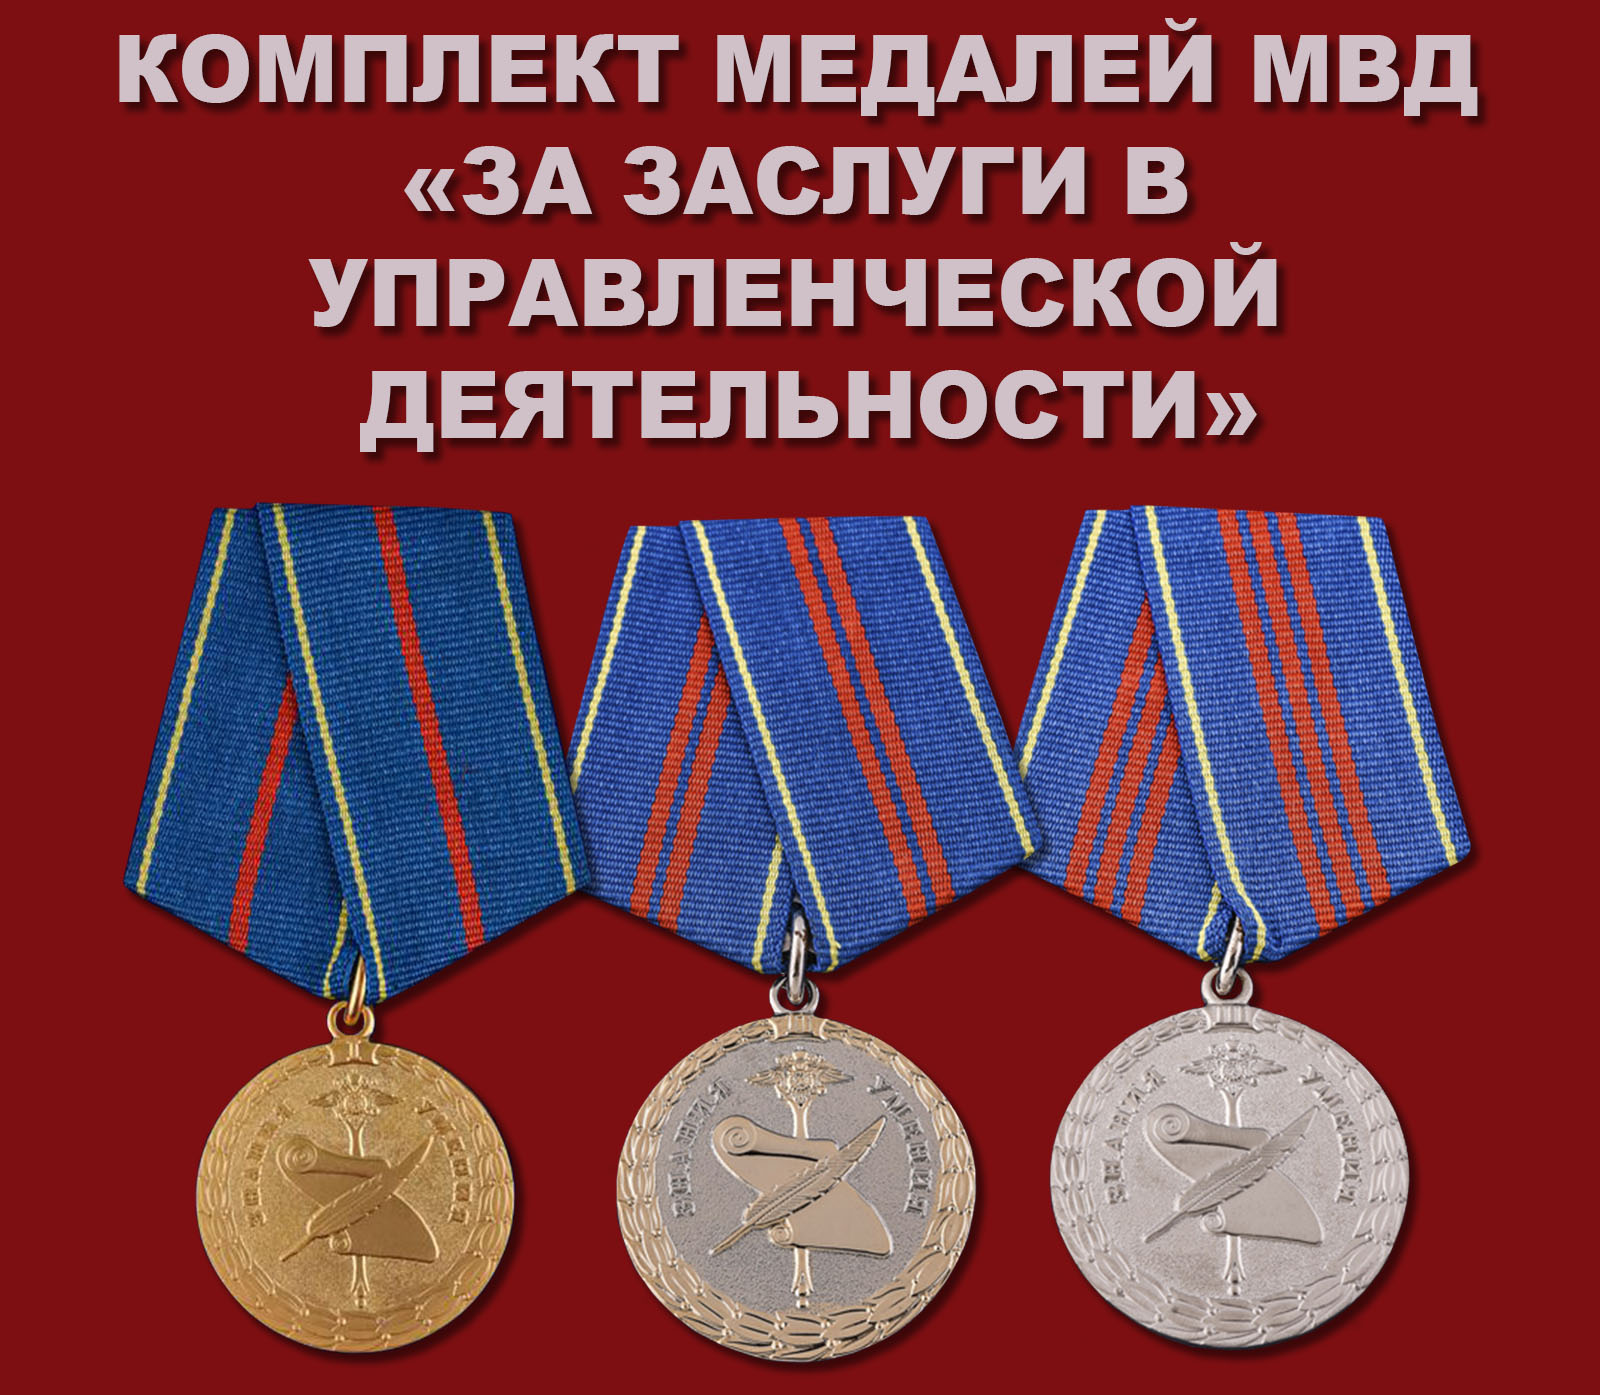 Купить комплект медалей МВД «За заслуги в управленческой деятельности»